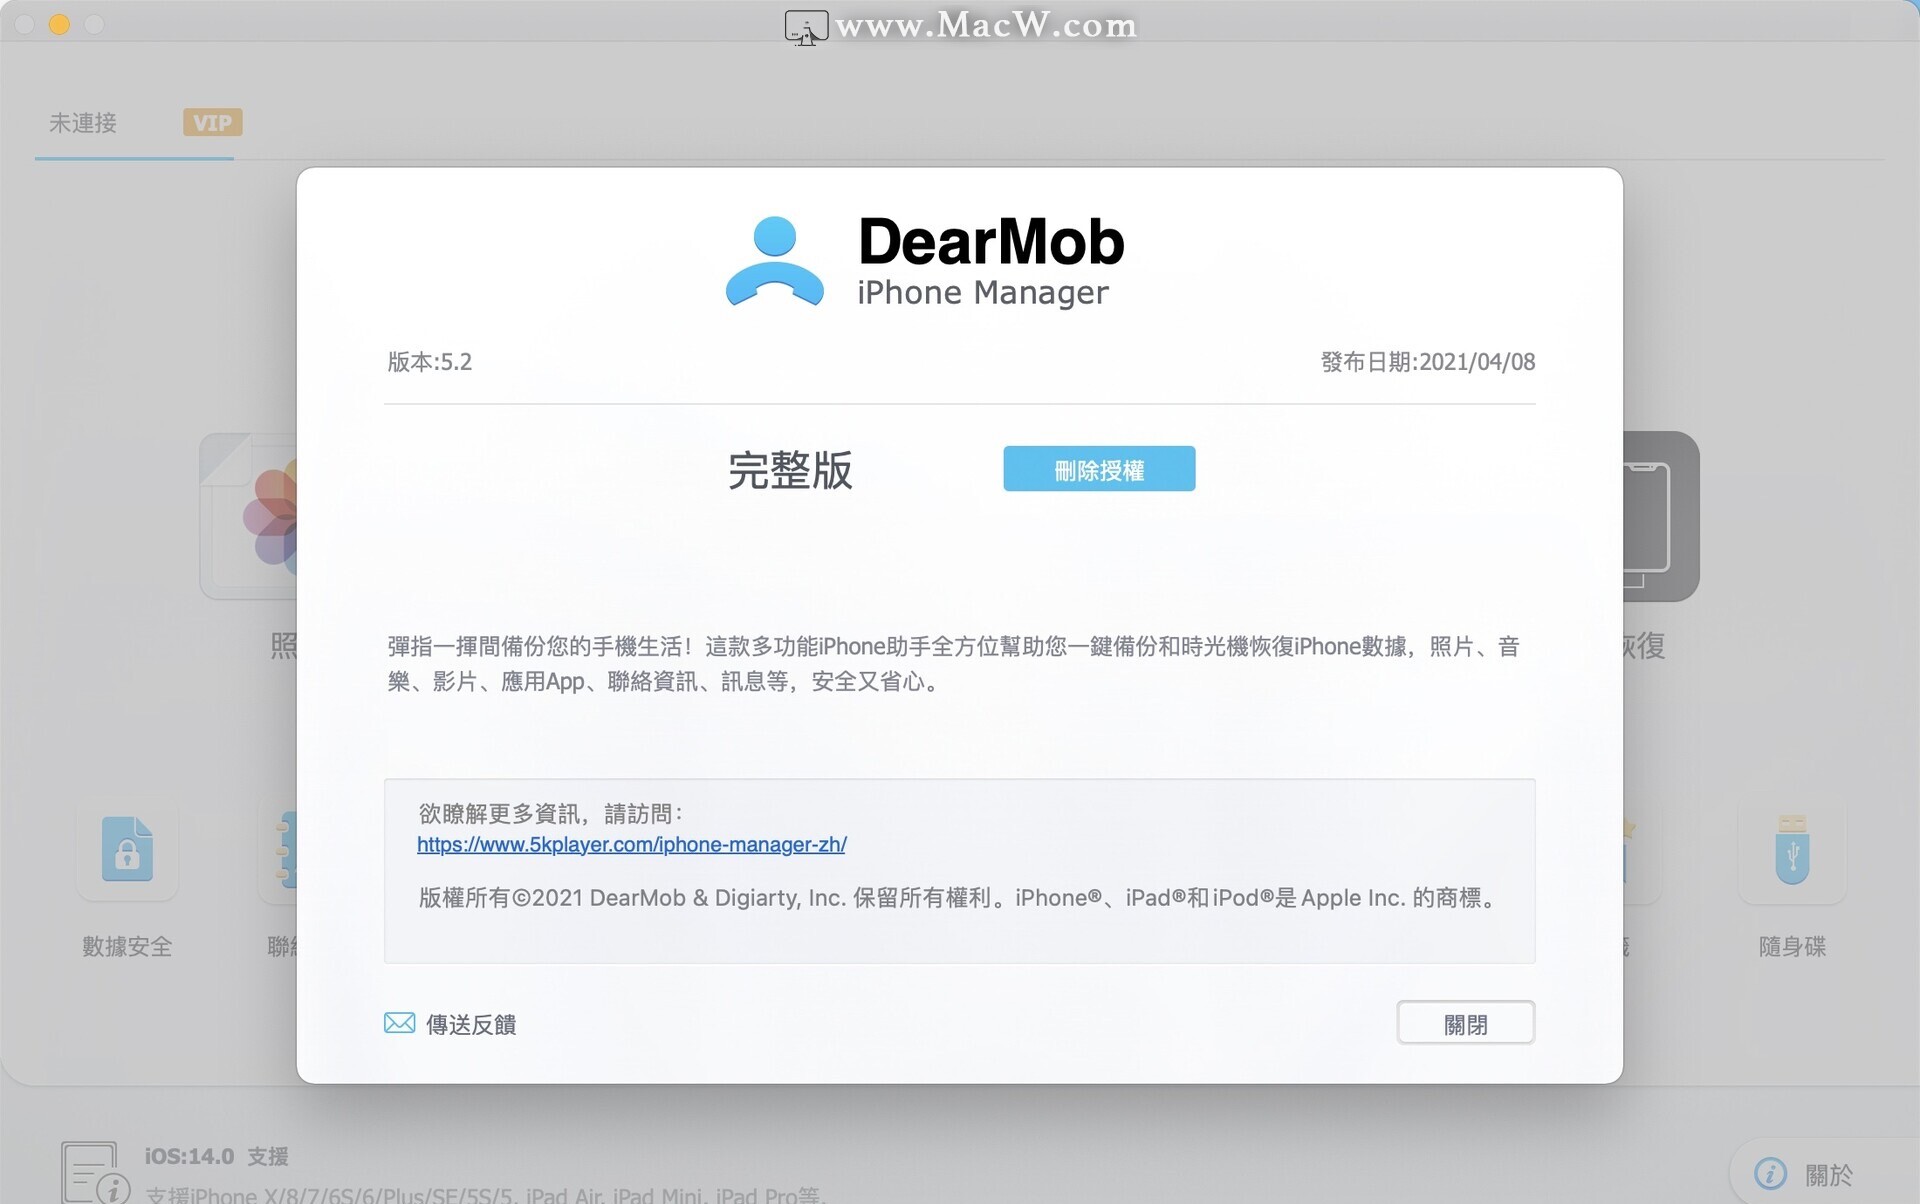 柒夏言琉璃 DearMob iPhone Manager Mac版一款功能强大的iPhone数据传输工具